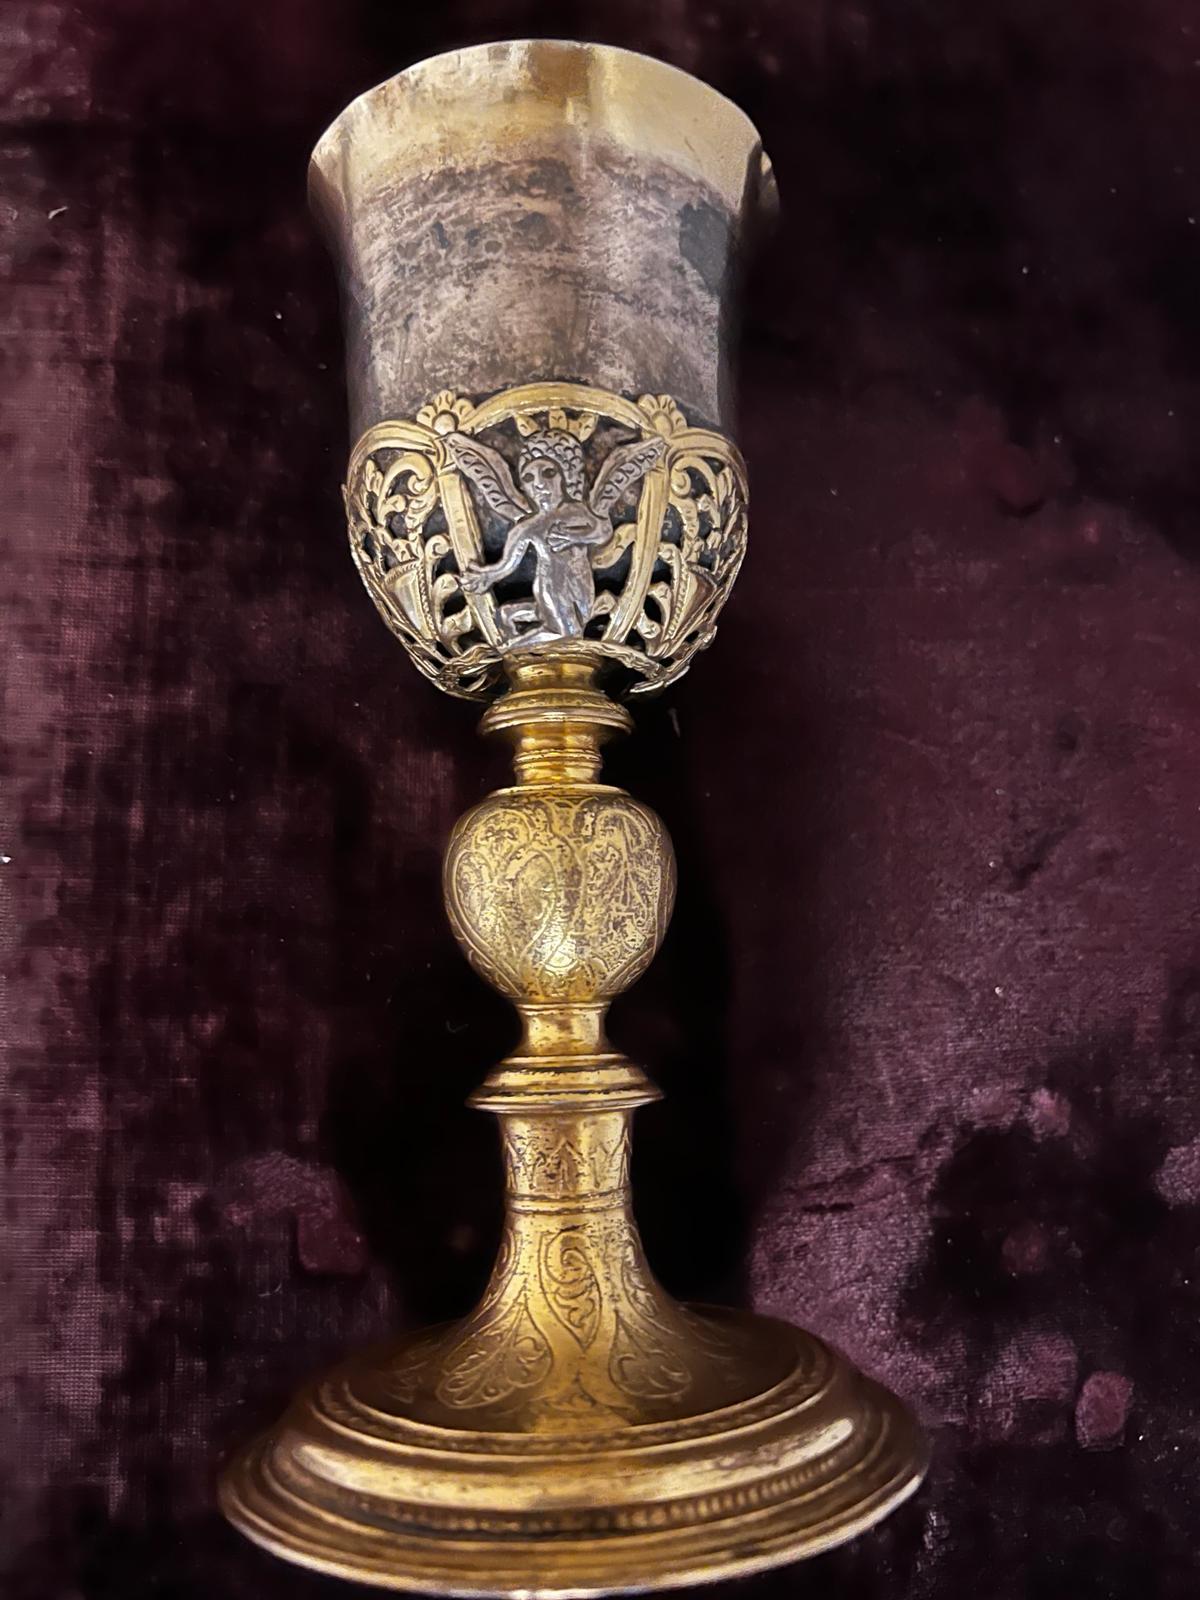 Dies ist eine absolut exquisite seltene Cooper vergoldet, Silber-Gold und drei Sterling Silber Engel Kelch stammt aus Augsburg (Deutschland) in der 1500. Der Kelch ist 21 cm hoch, hat einen Durchmesser von 10 cm und wiegt 420 gr., also fast ein